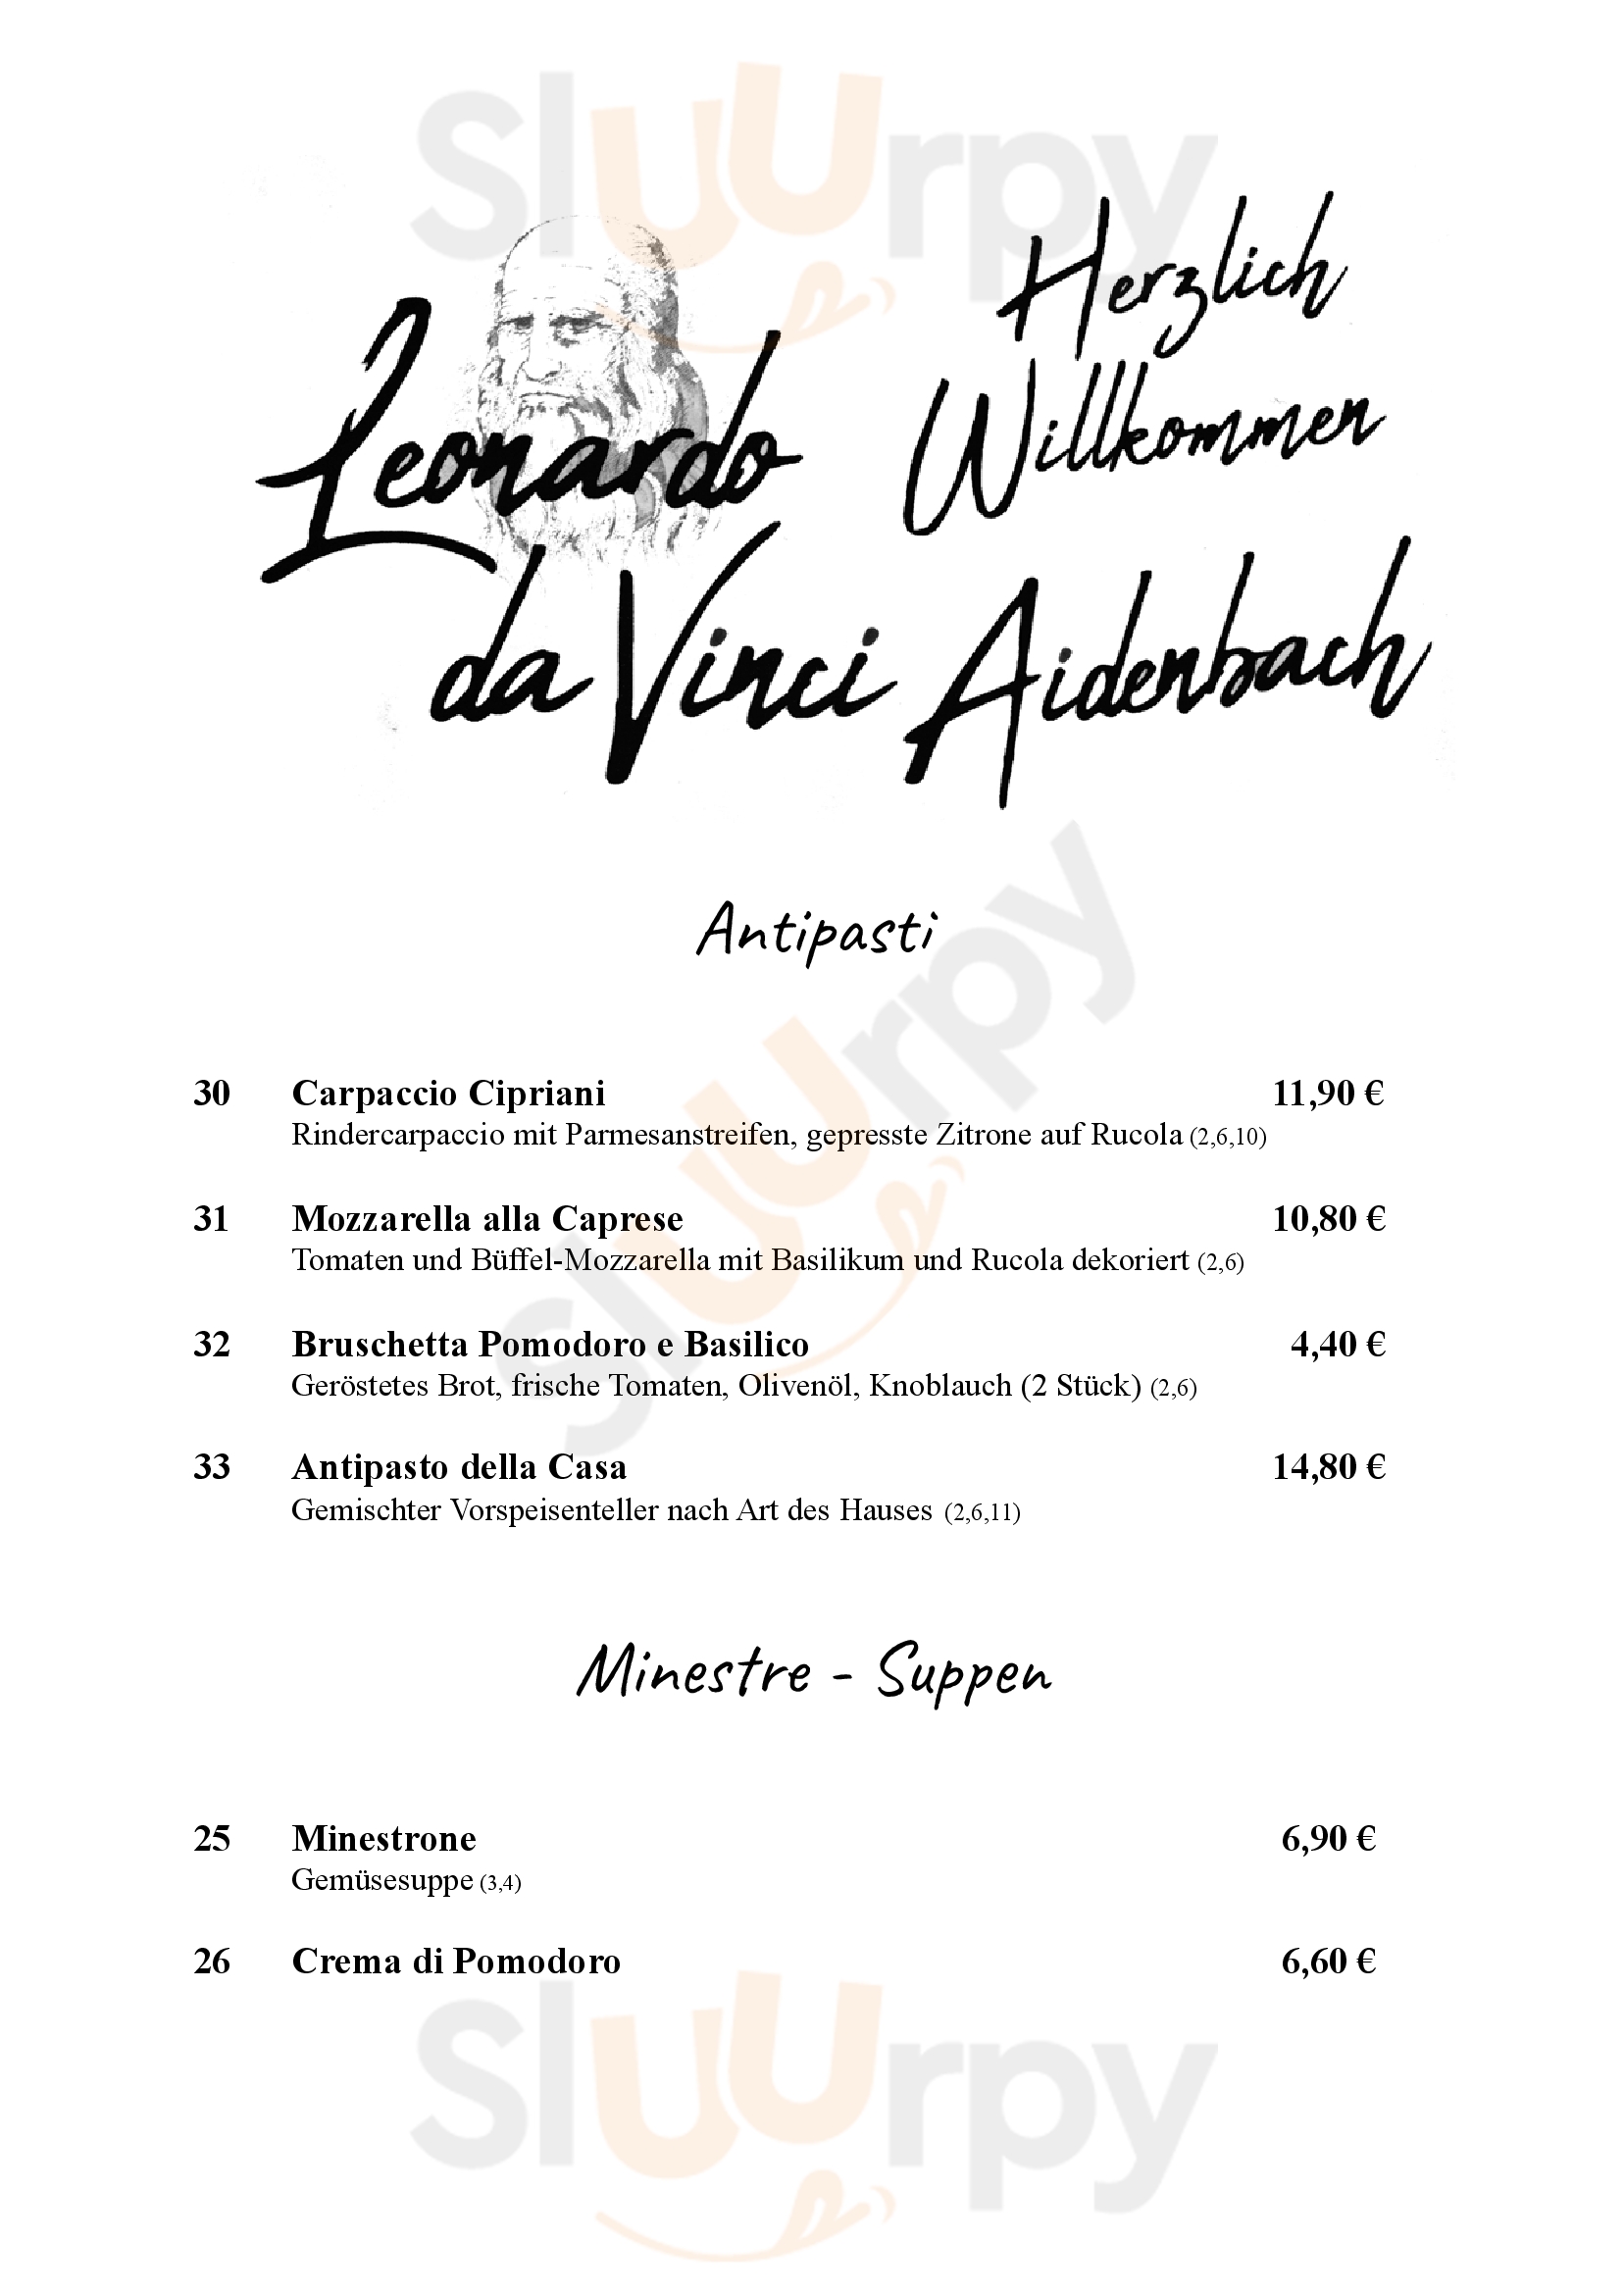 Pizzeria Leonardo Aidenbach Menu - 1